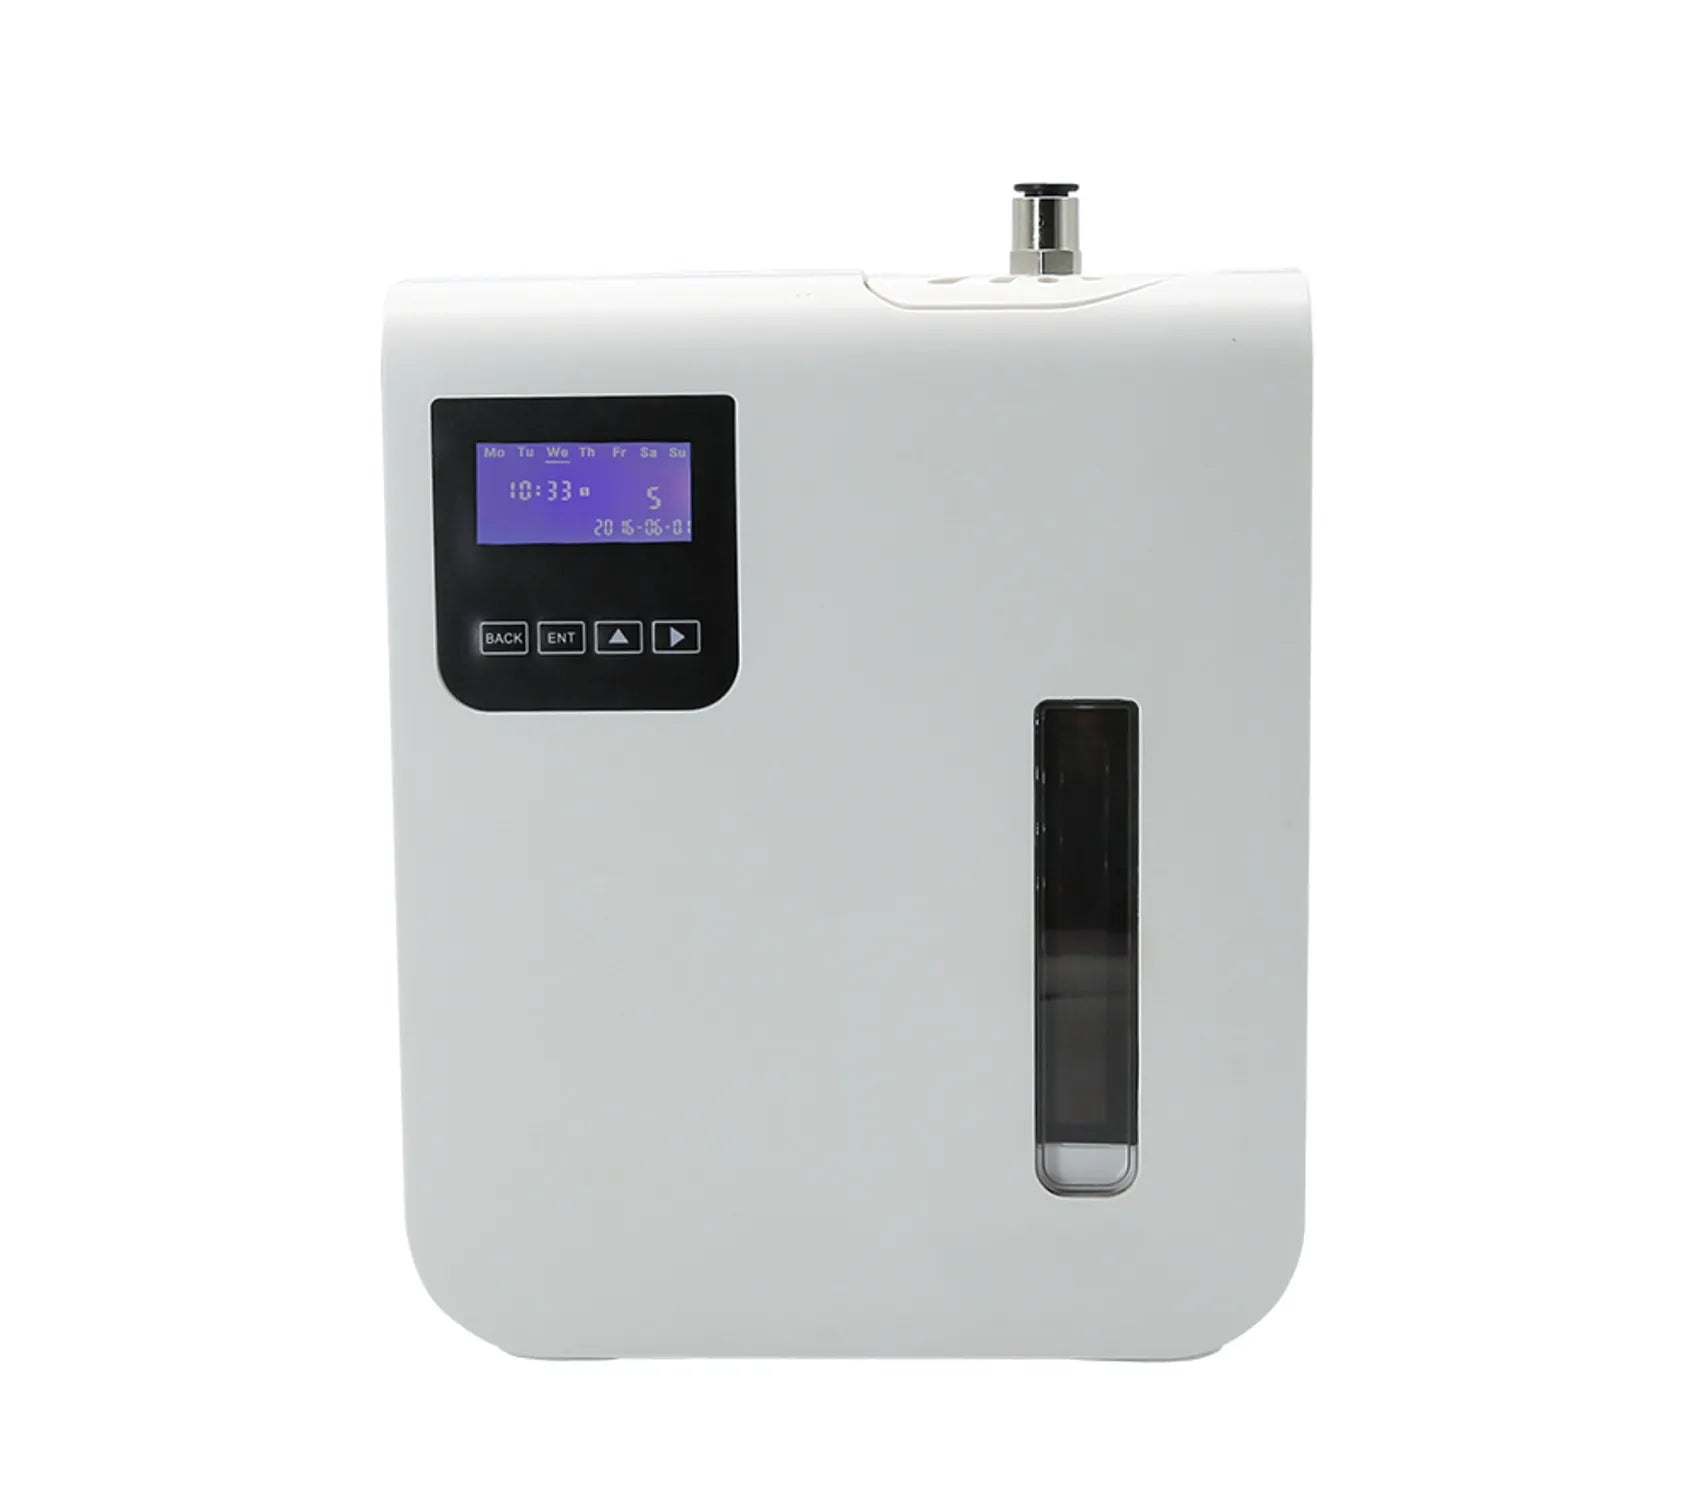 Nebulizador de fragancias para estancias medianas, conexión con aire acondicionado, 250ml de carga, programable mediante app móvil